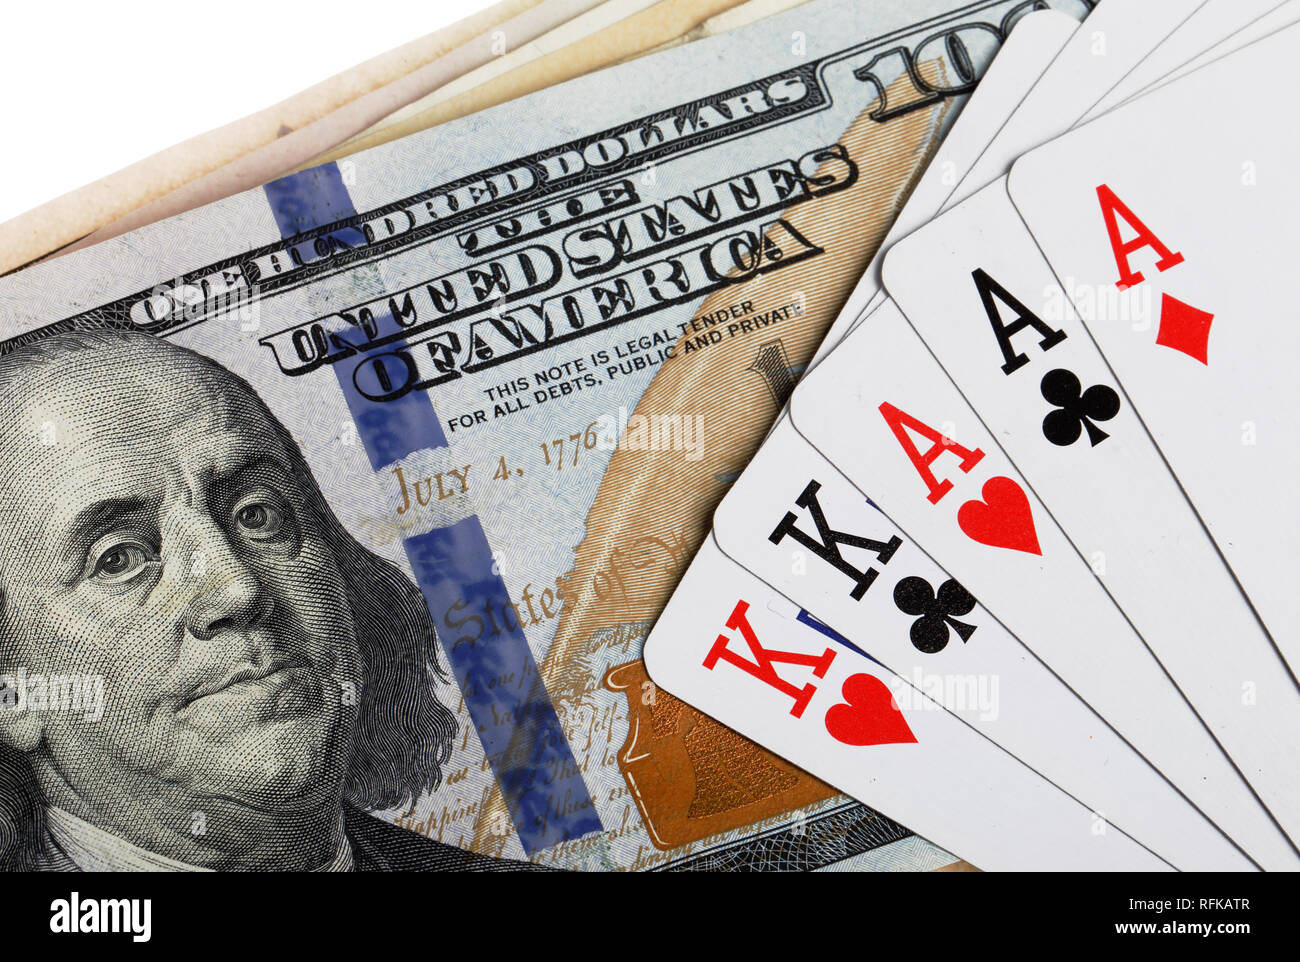 Full house poker hand on US dollar bills. Stock Photo